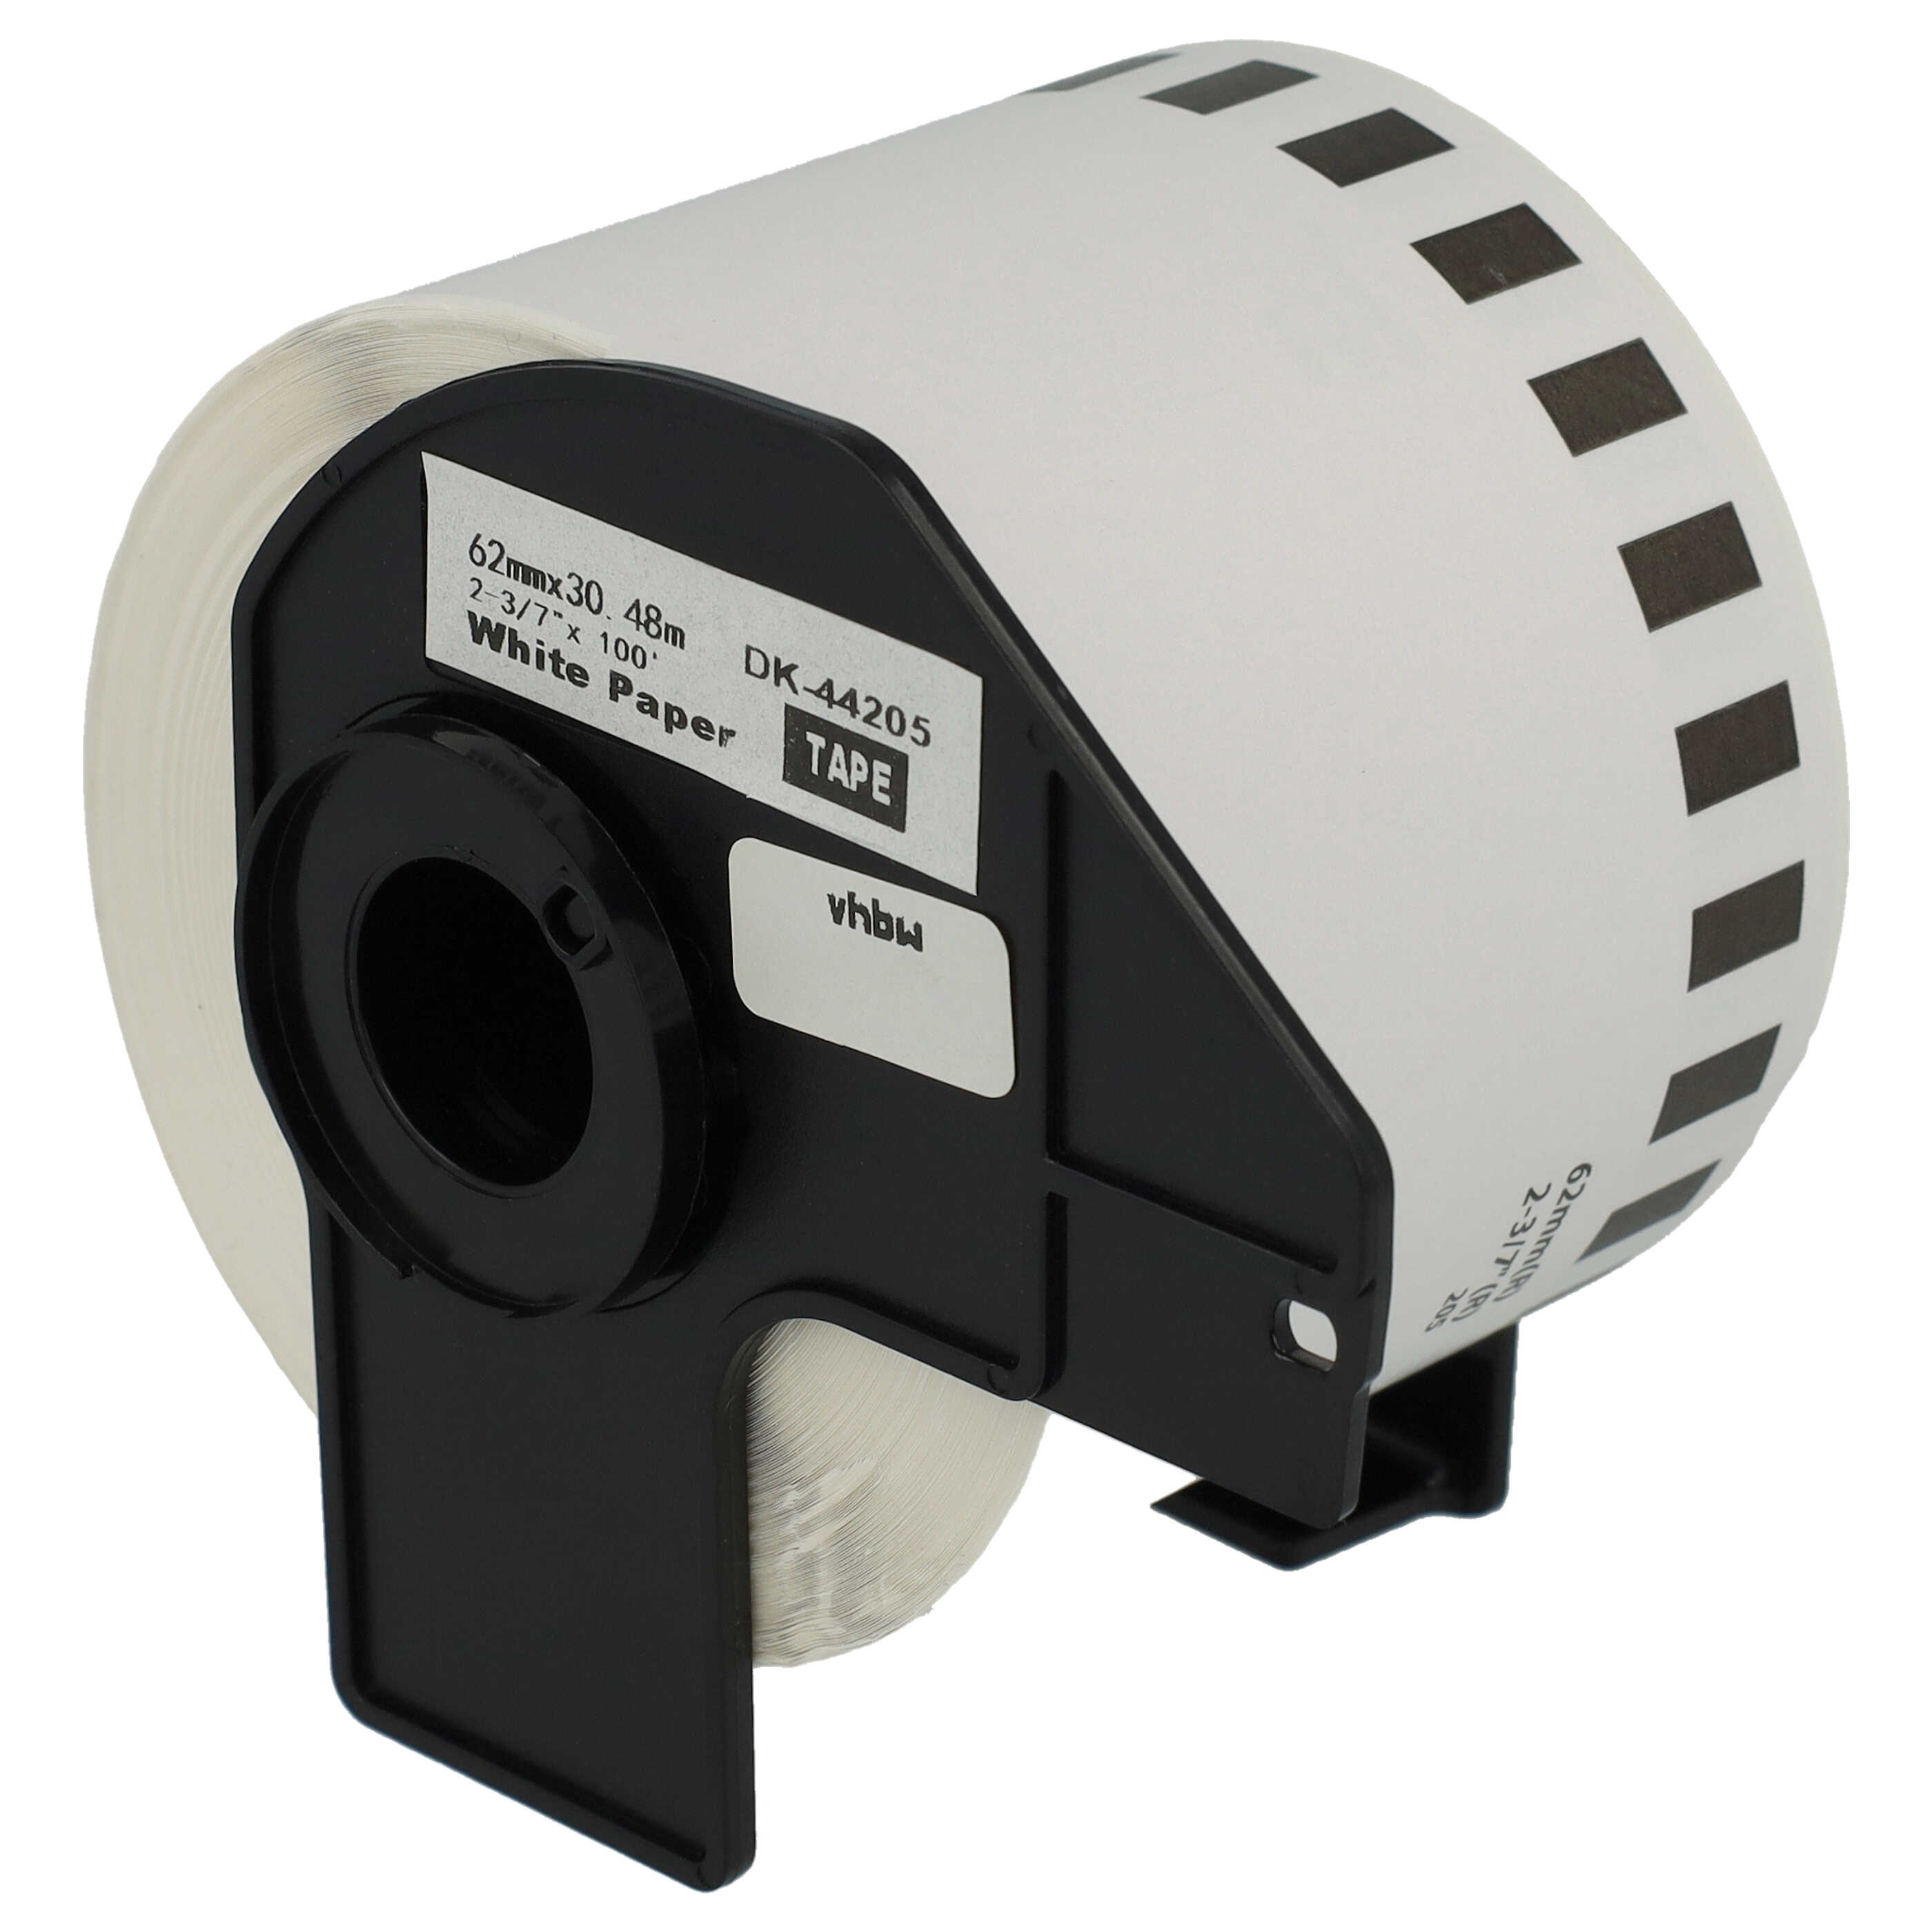 Etiquetas reemplaza Brother DK-44205 para impresora etiquetas - Premium 62 mm x 30,48 m + soporte